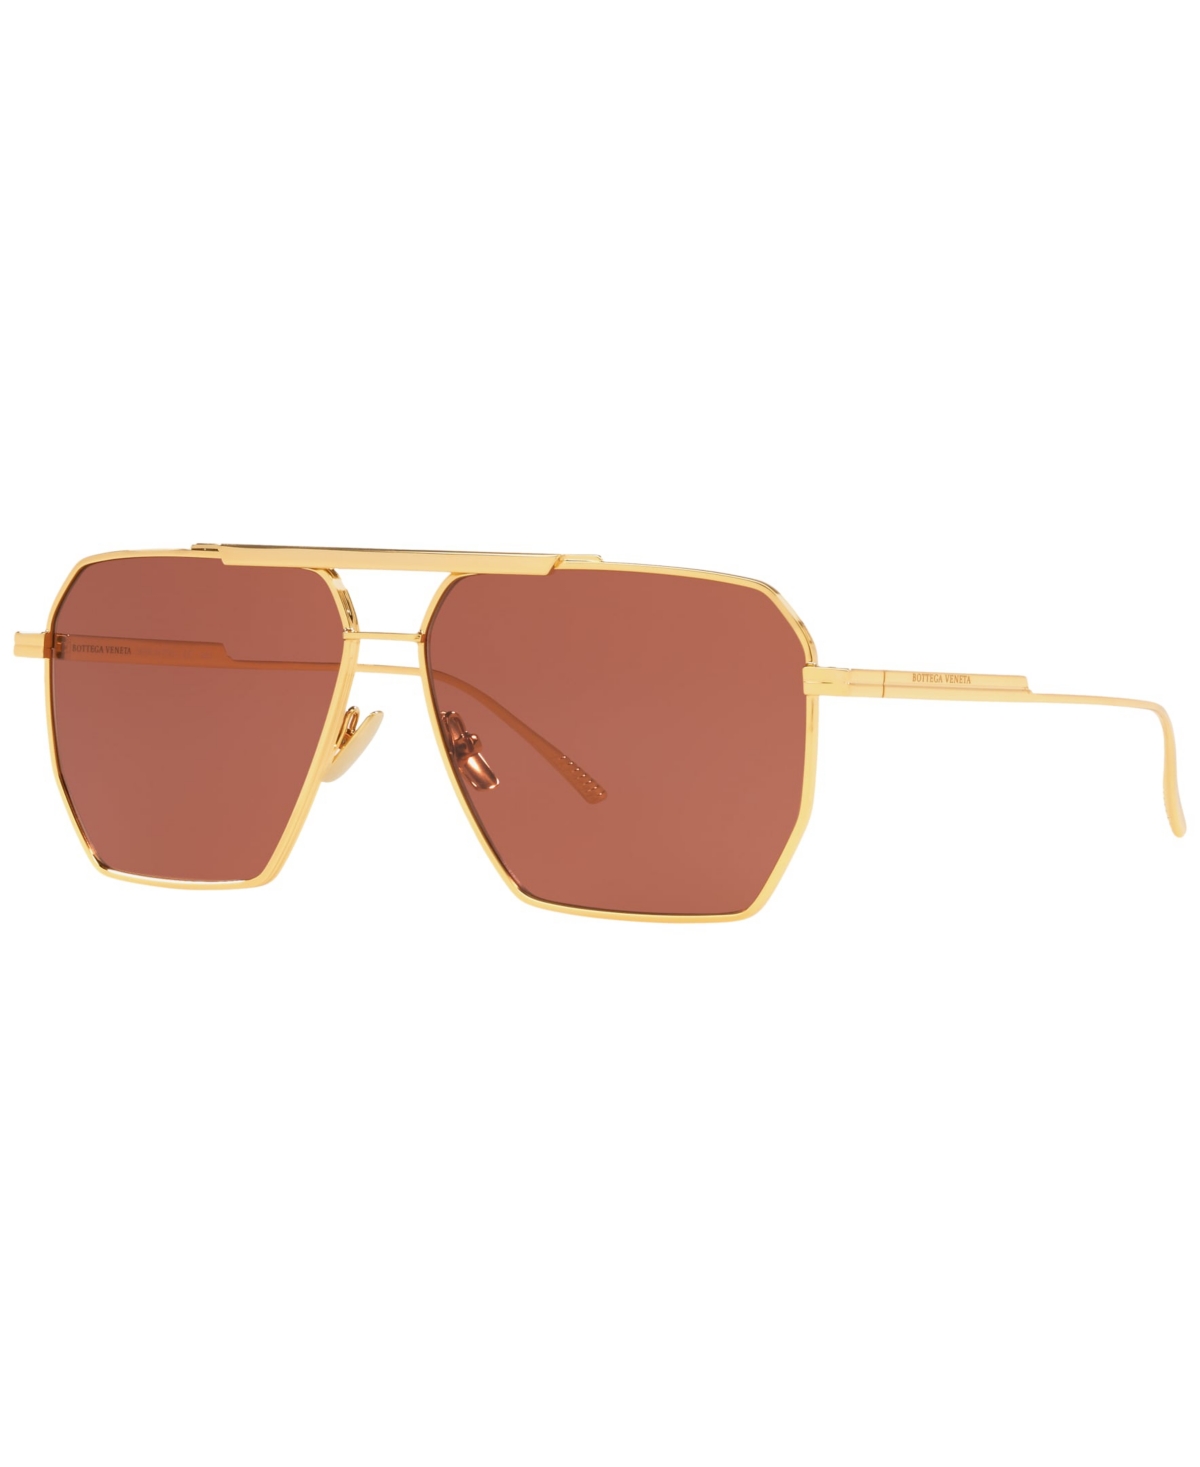 Bottega Veneta Men's Sunglasses, Bv1012s In Gold